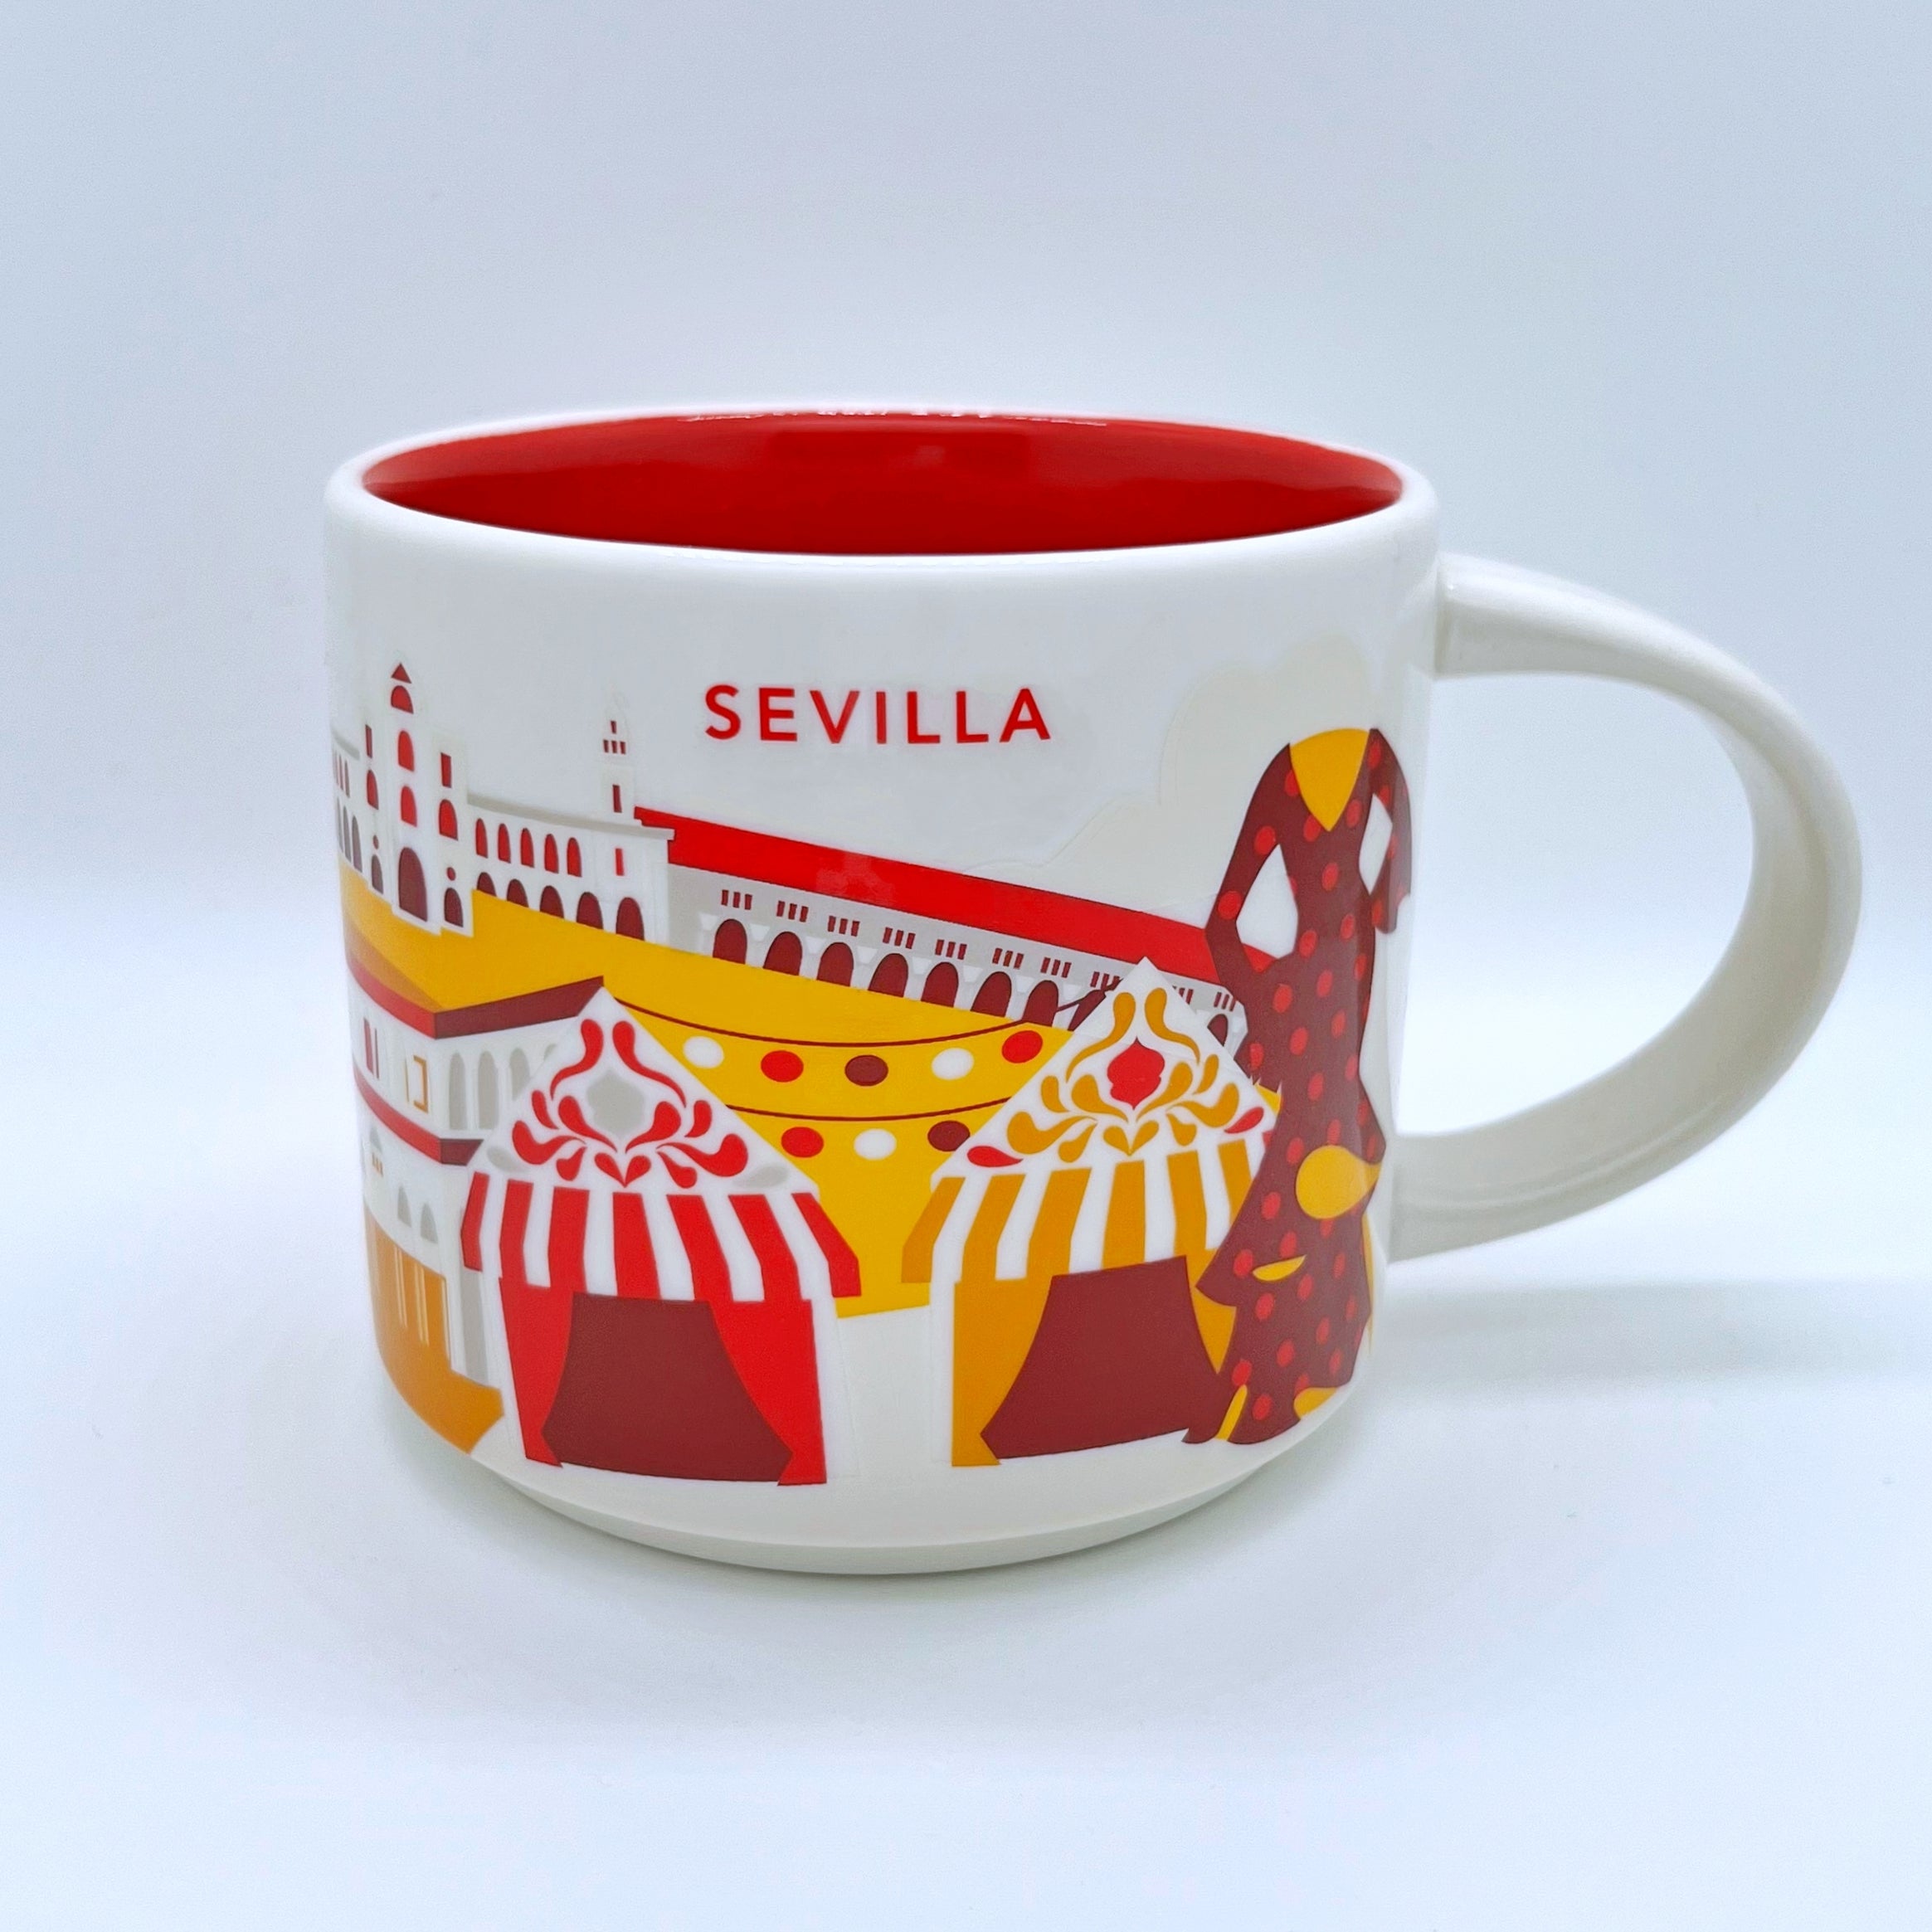 Kaffee Tee und Cappuccino Tasse von Starbucks mit gemalten Bildern aus der Stadt Sevilla